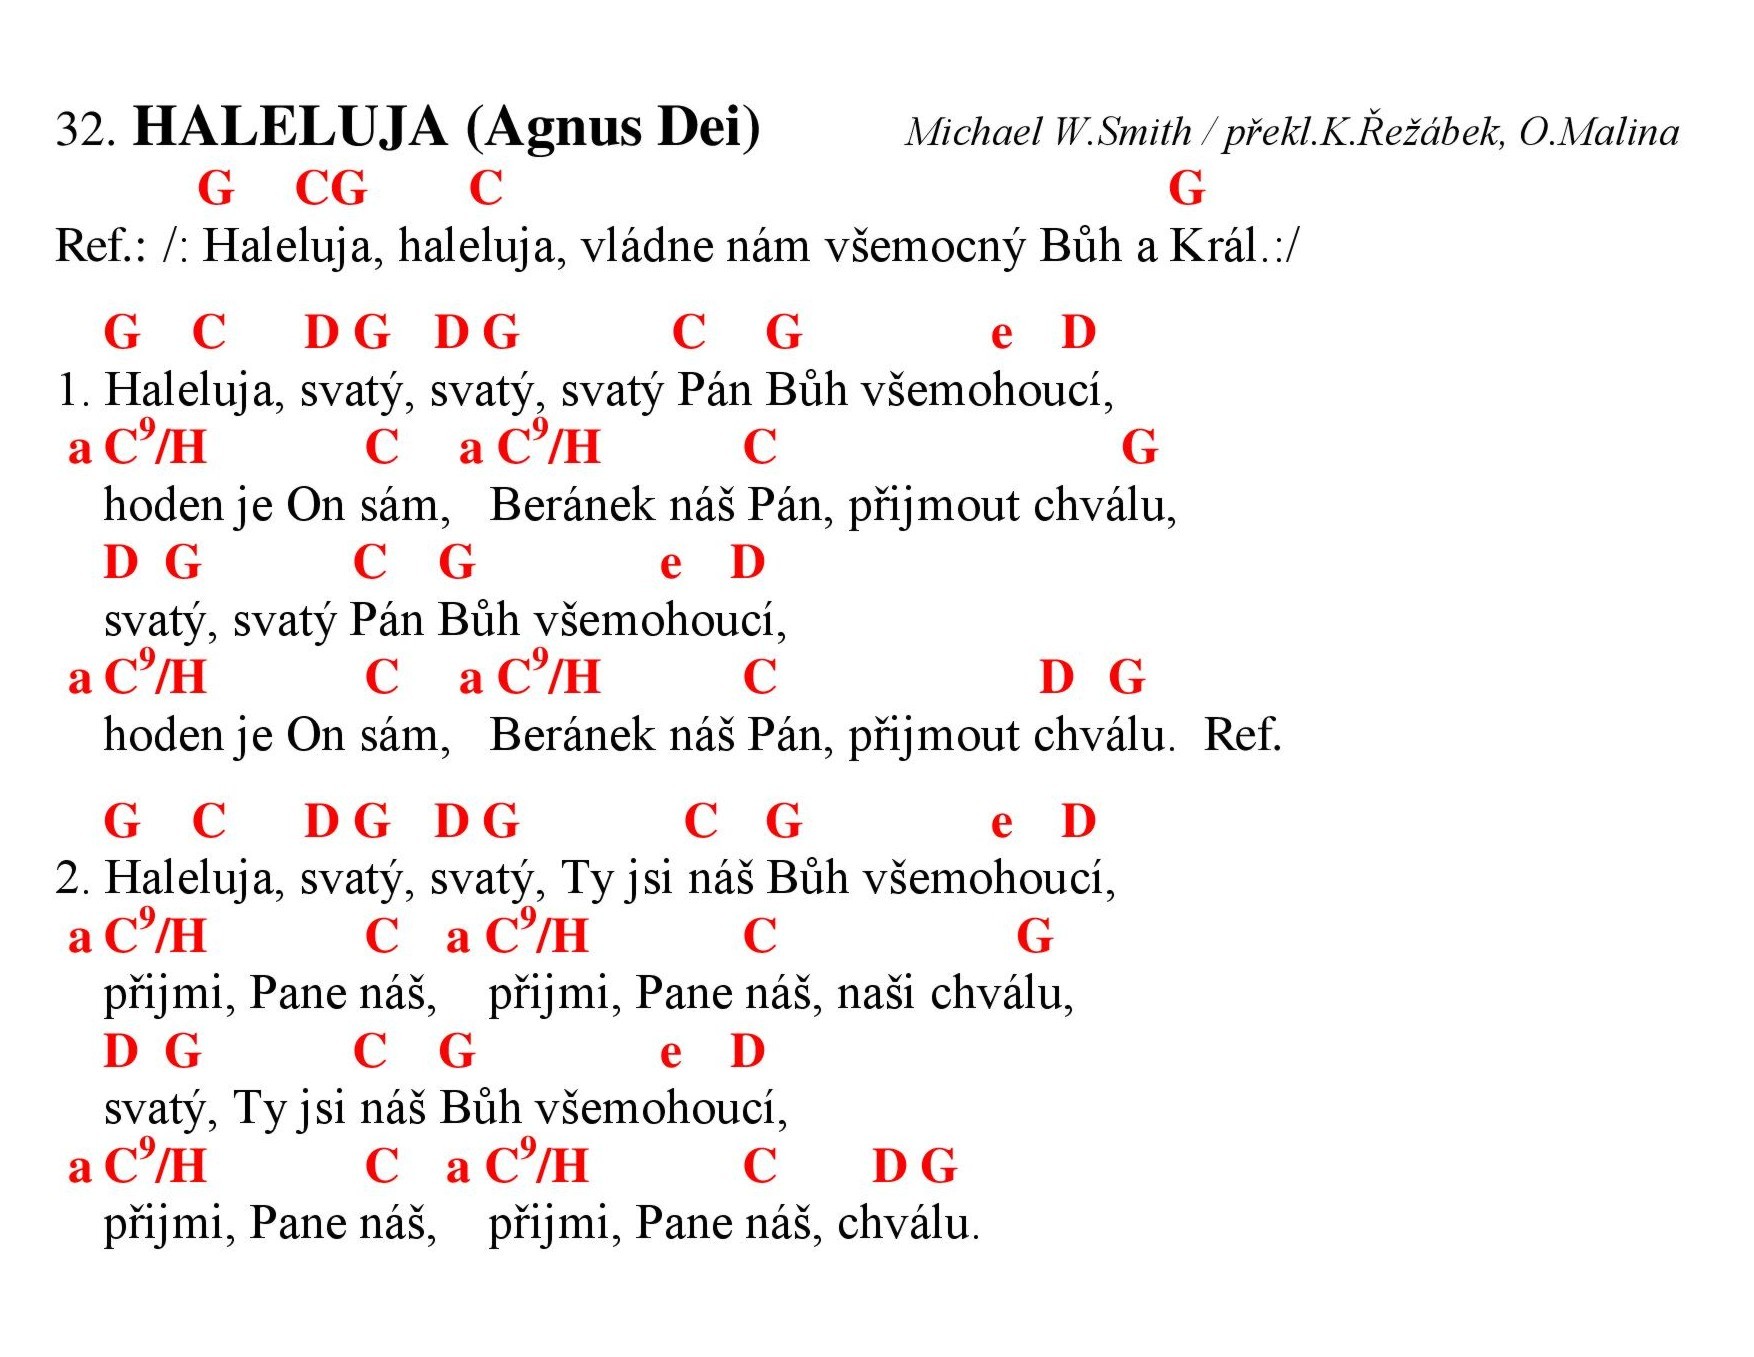 032 Haleluja - Agnus Dei